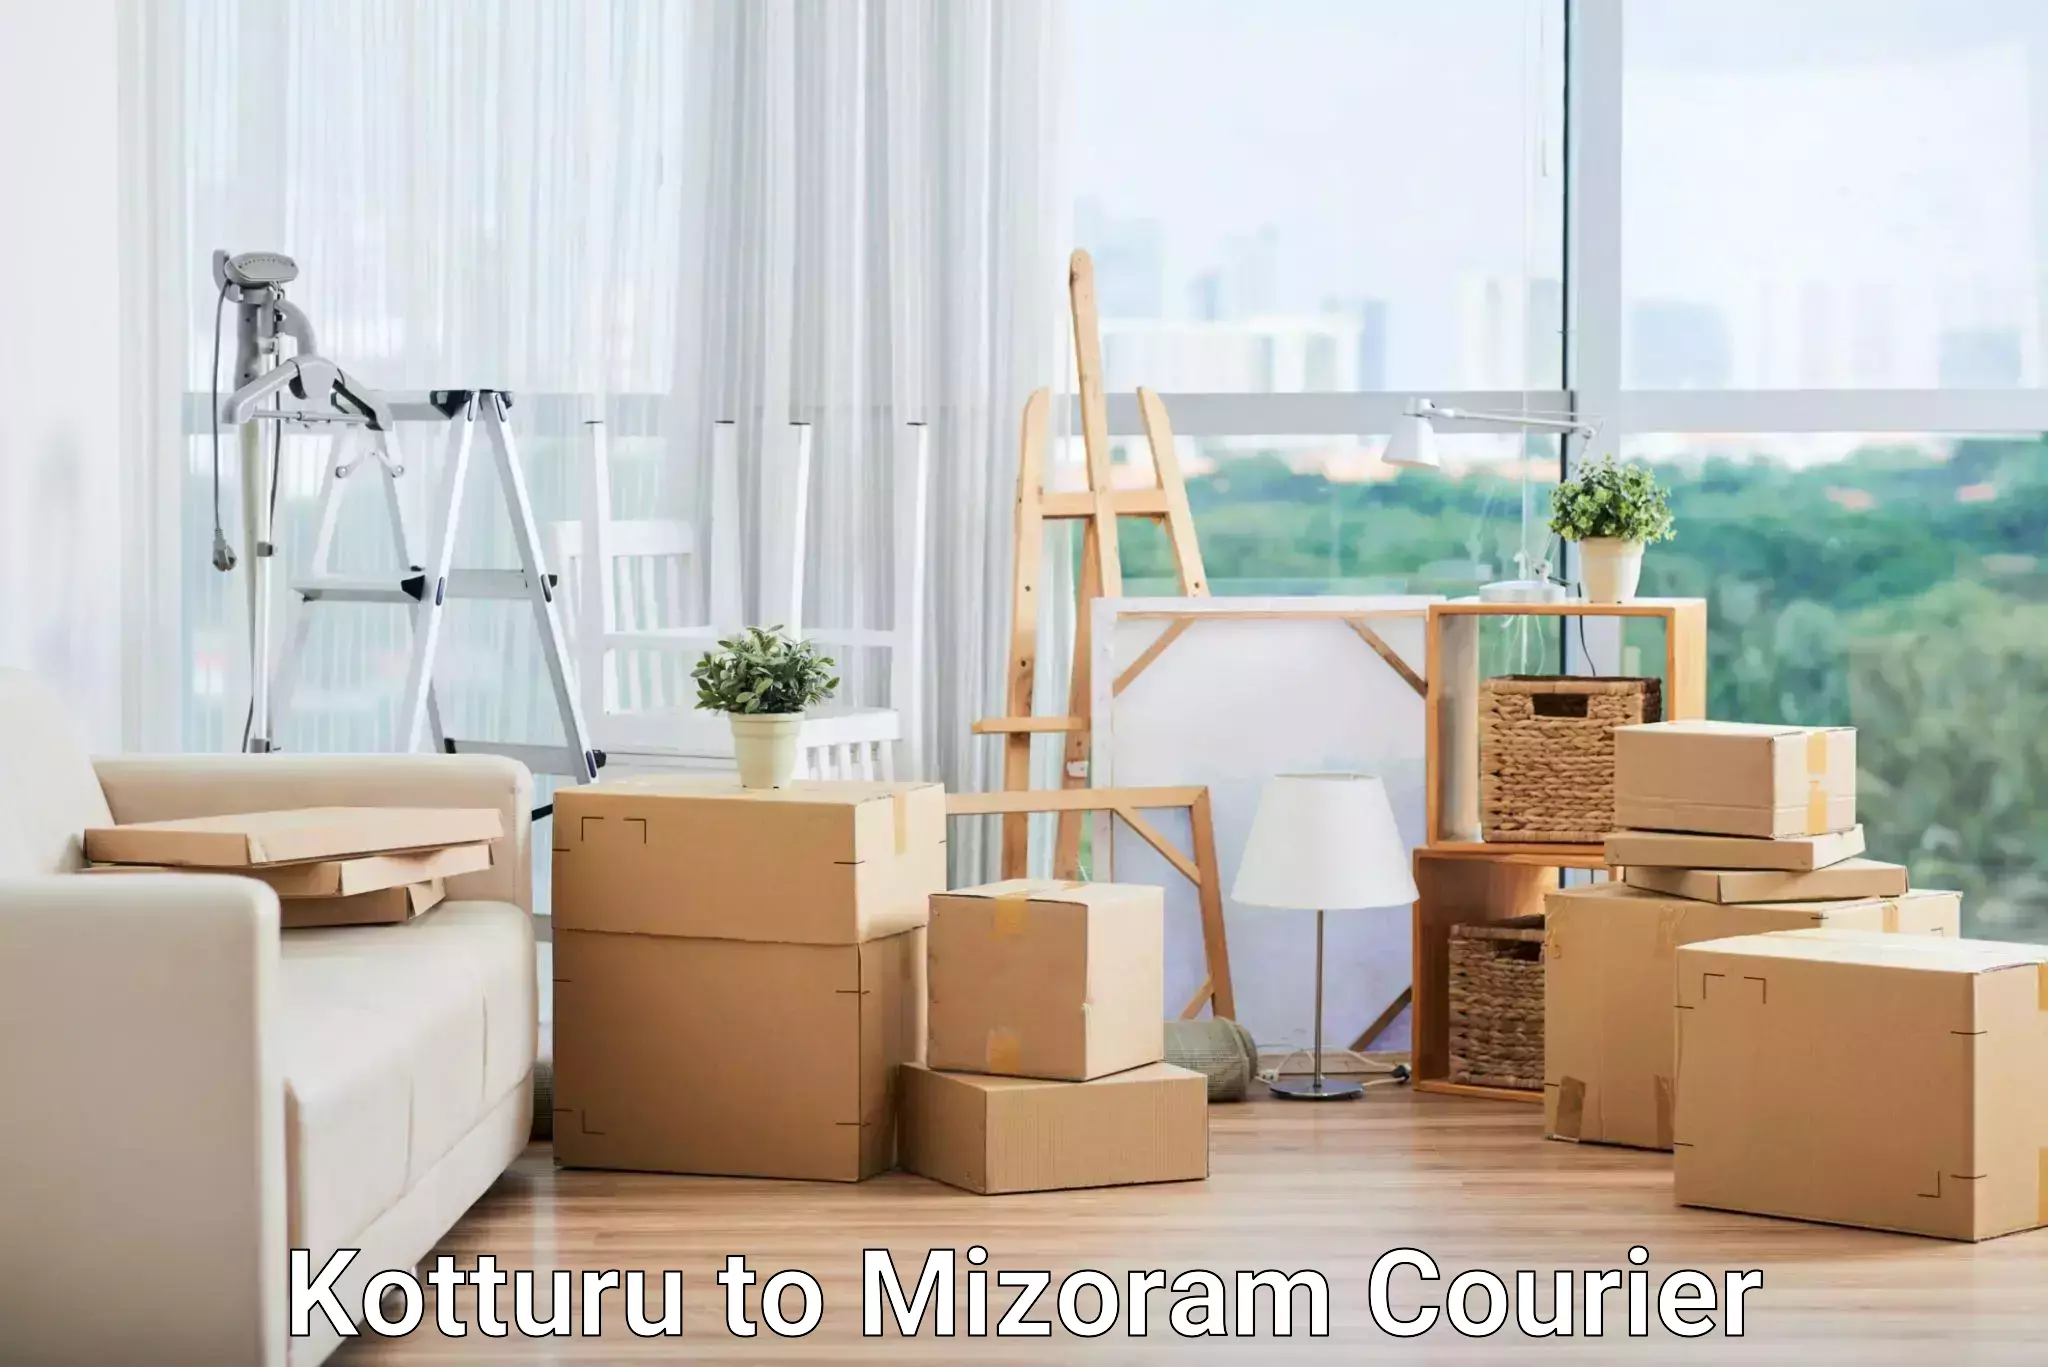 Advanced courier platforms Kotturu to Mizoram